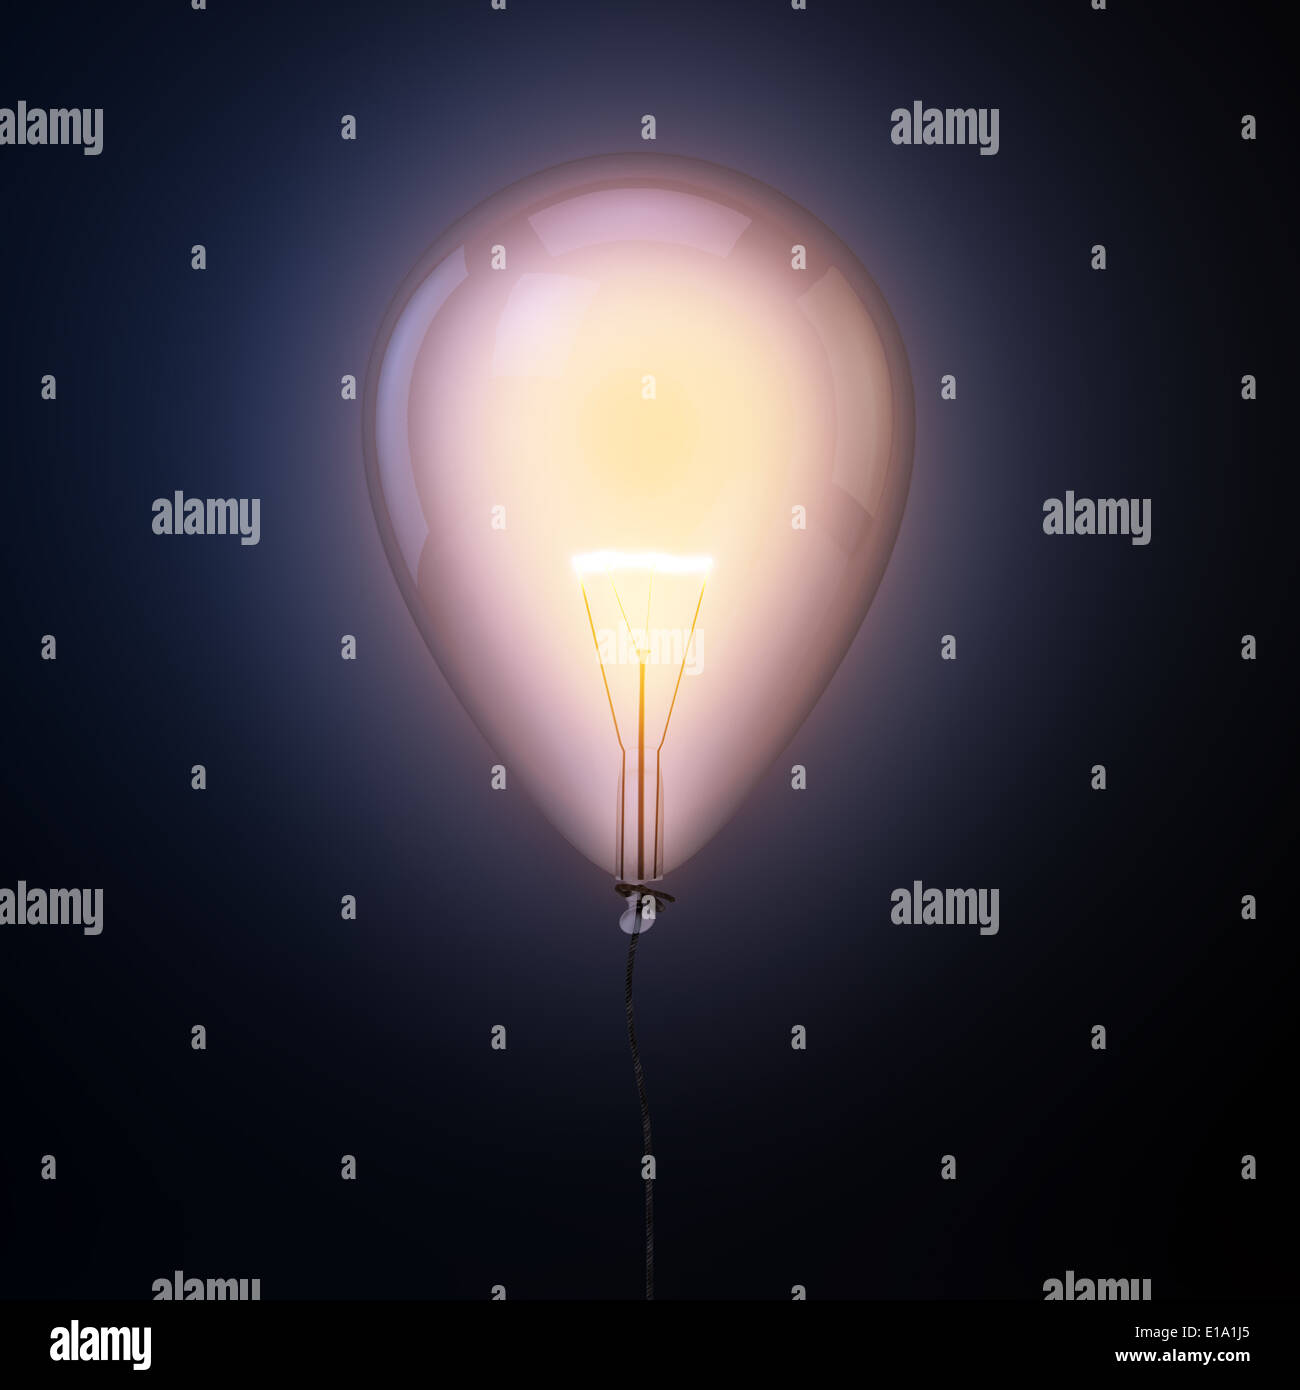 Lampe im Inneren ein Ballon - Kreativität-Konzept-Abbildung Stockfoto